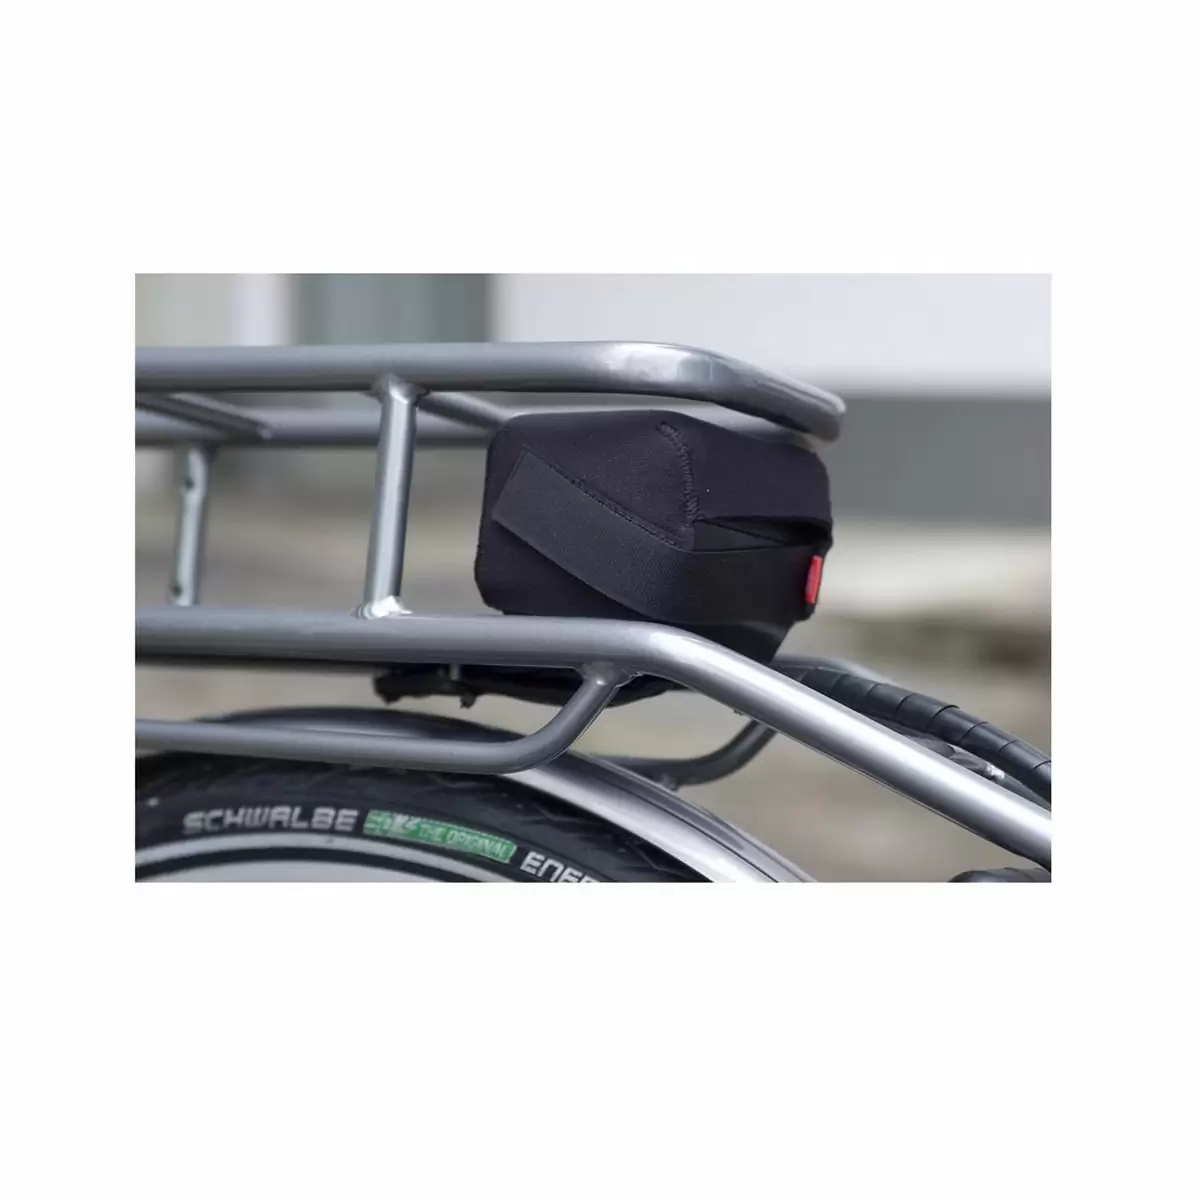 Tampa protetora tampa elétrica montagem em rack traseiro tamanho da bateria L / Bosch Yamaha Shimano - image